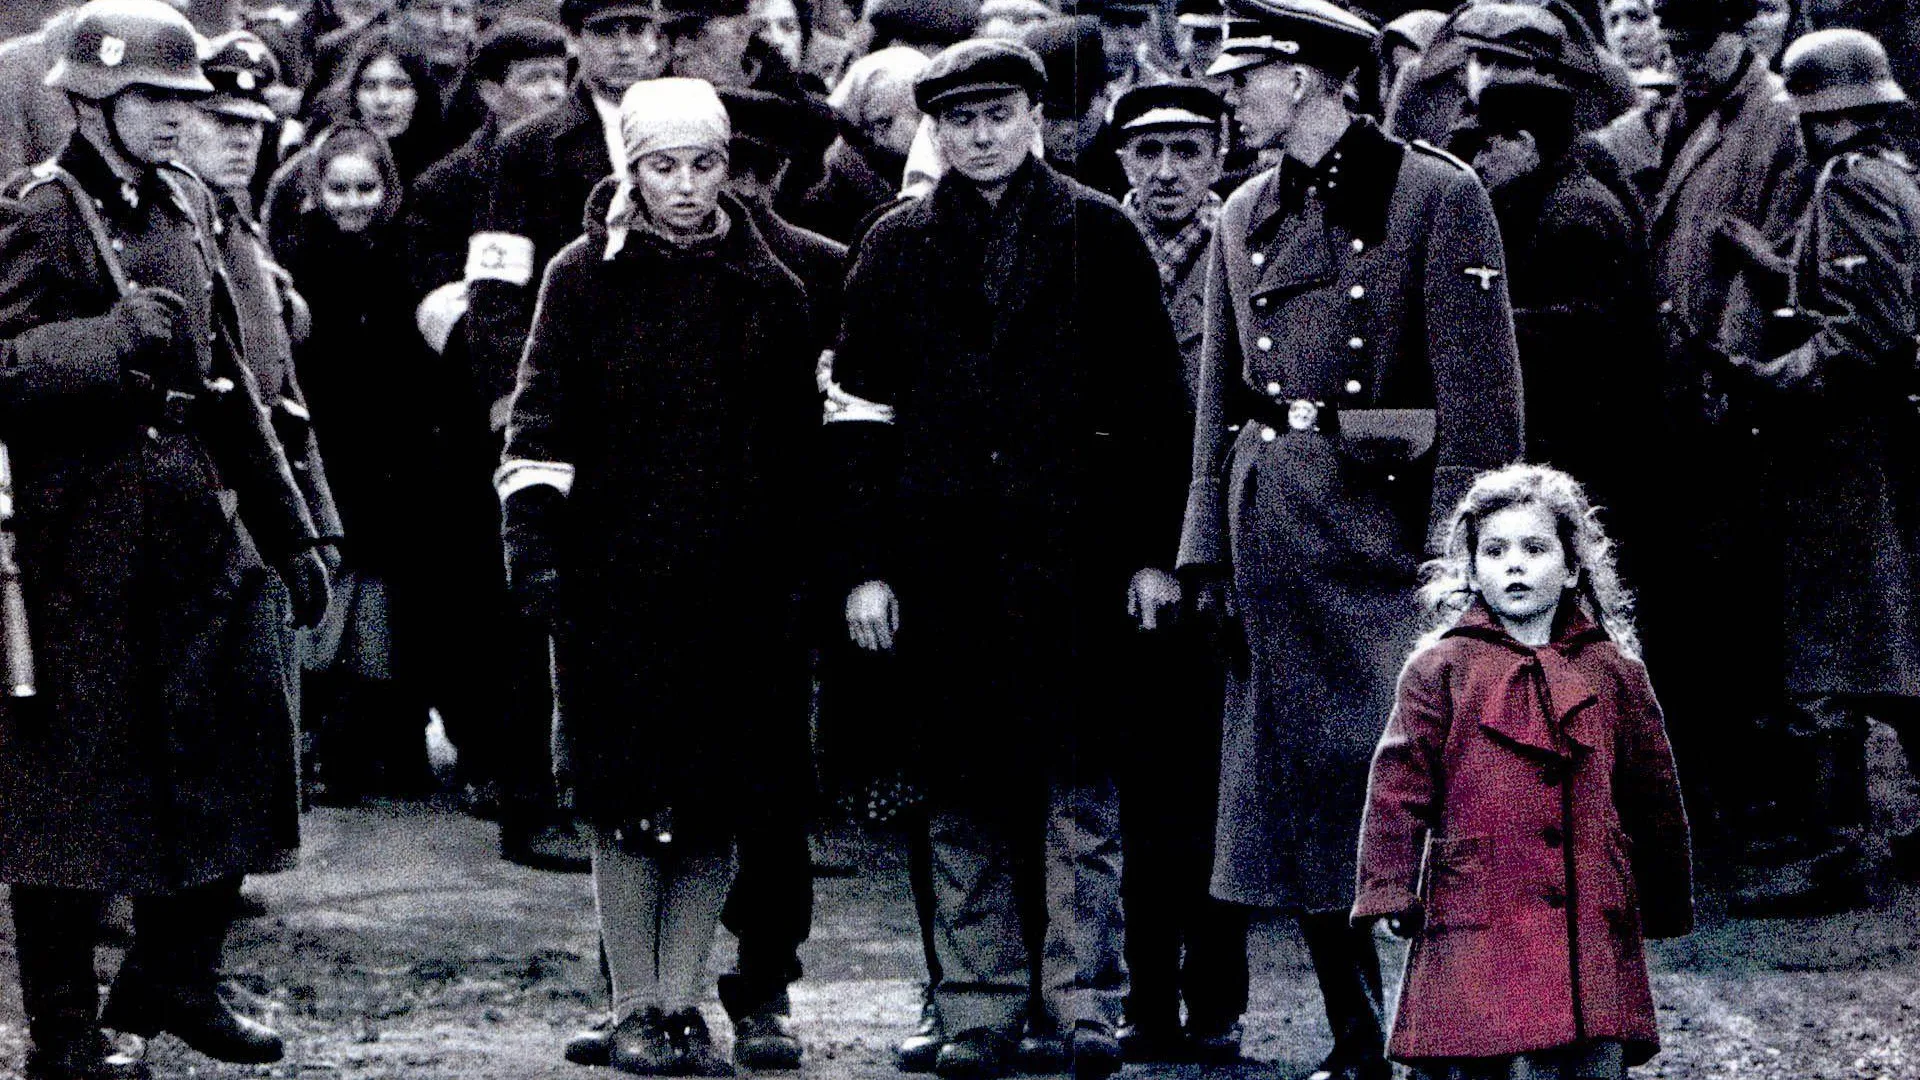 La lista de Schindler niña con abrigo rojo.